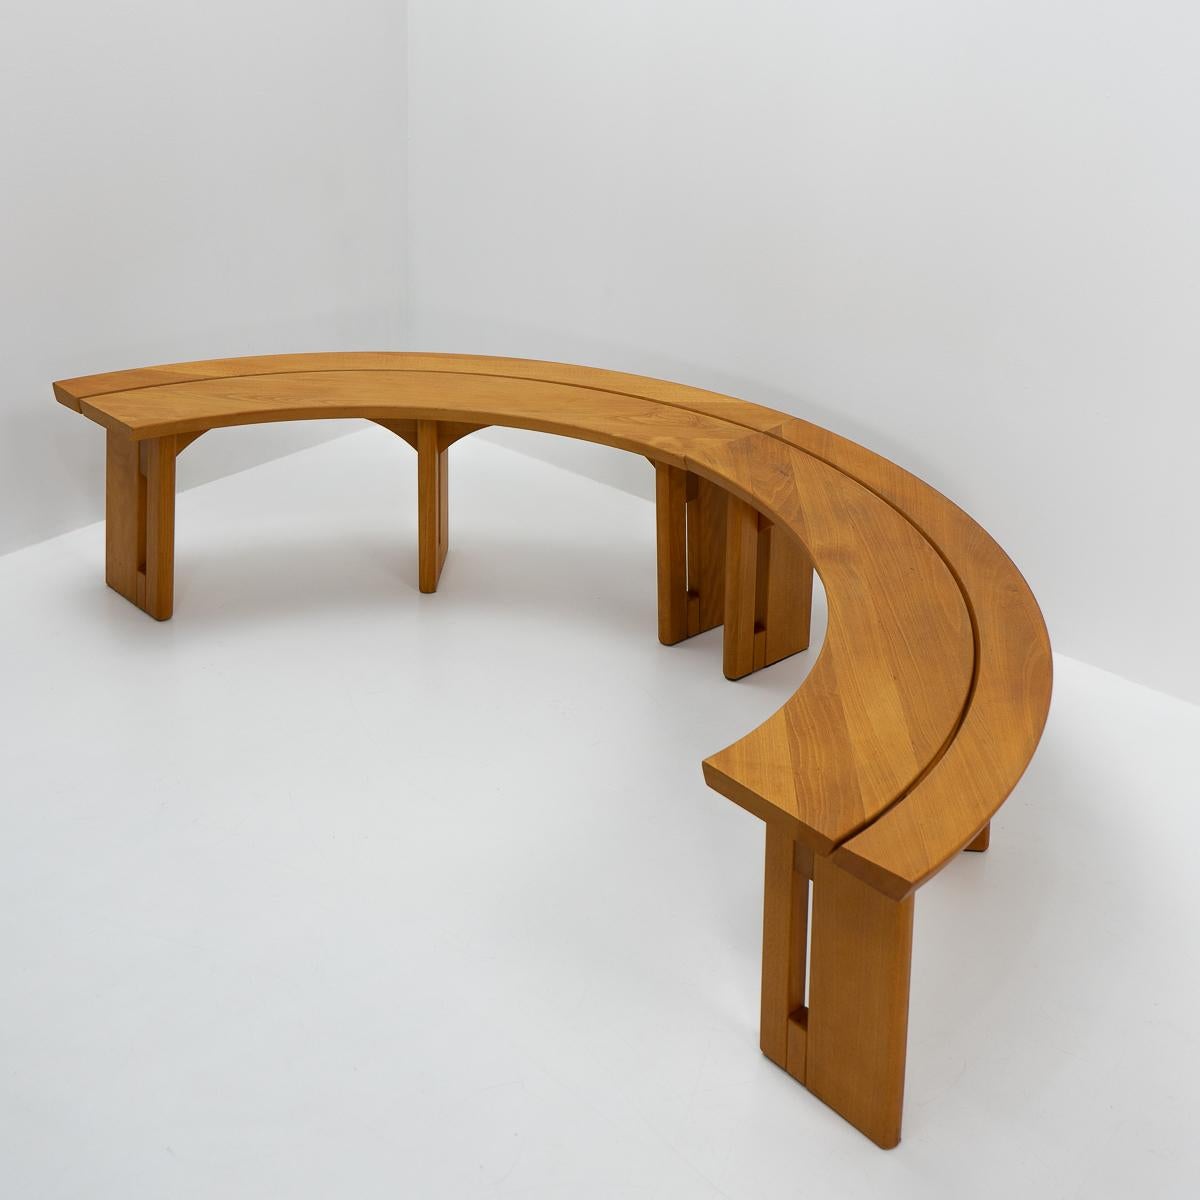 Ensemble de deux bancs en bois d'orme produit par Seltz France attribué à Pierre Chapo. 

Ces bancs sont conçus pour s'adapter à une table ronde de 110 cm à 140 cm.


Dimensions :

Largeur : 140 cm

Hauteur : 44 cm

Profondeur : 31 cm



Matériaux :